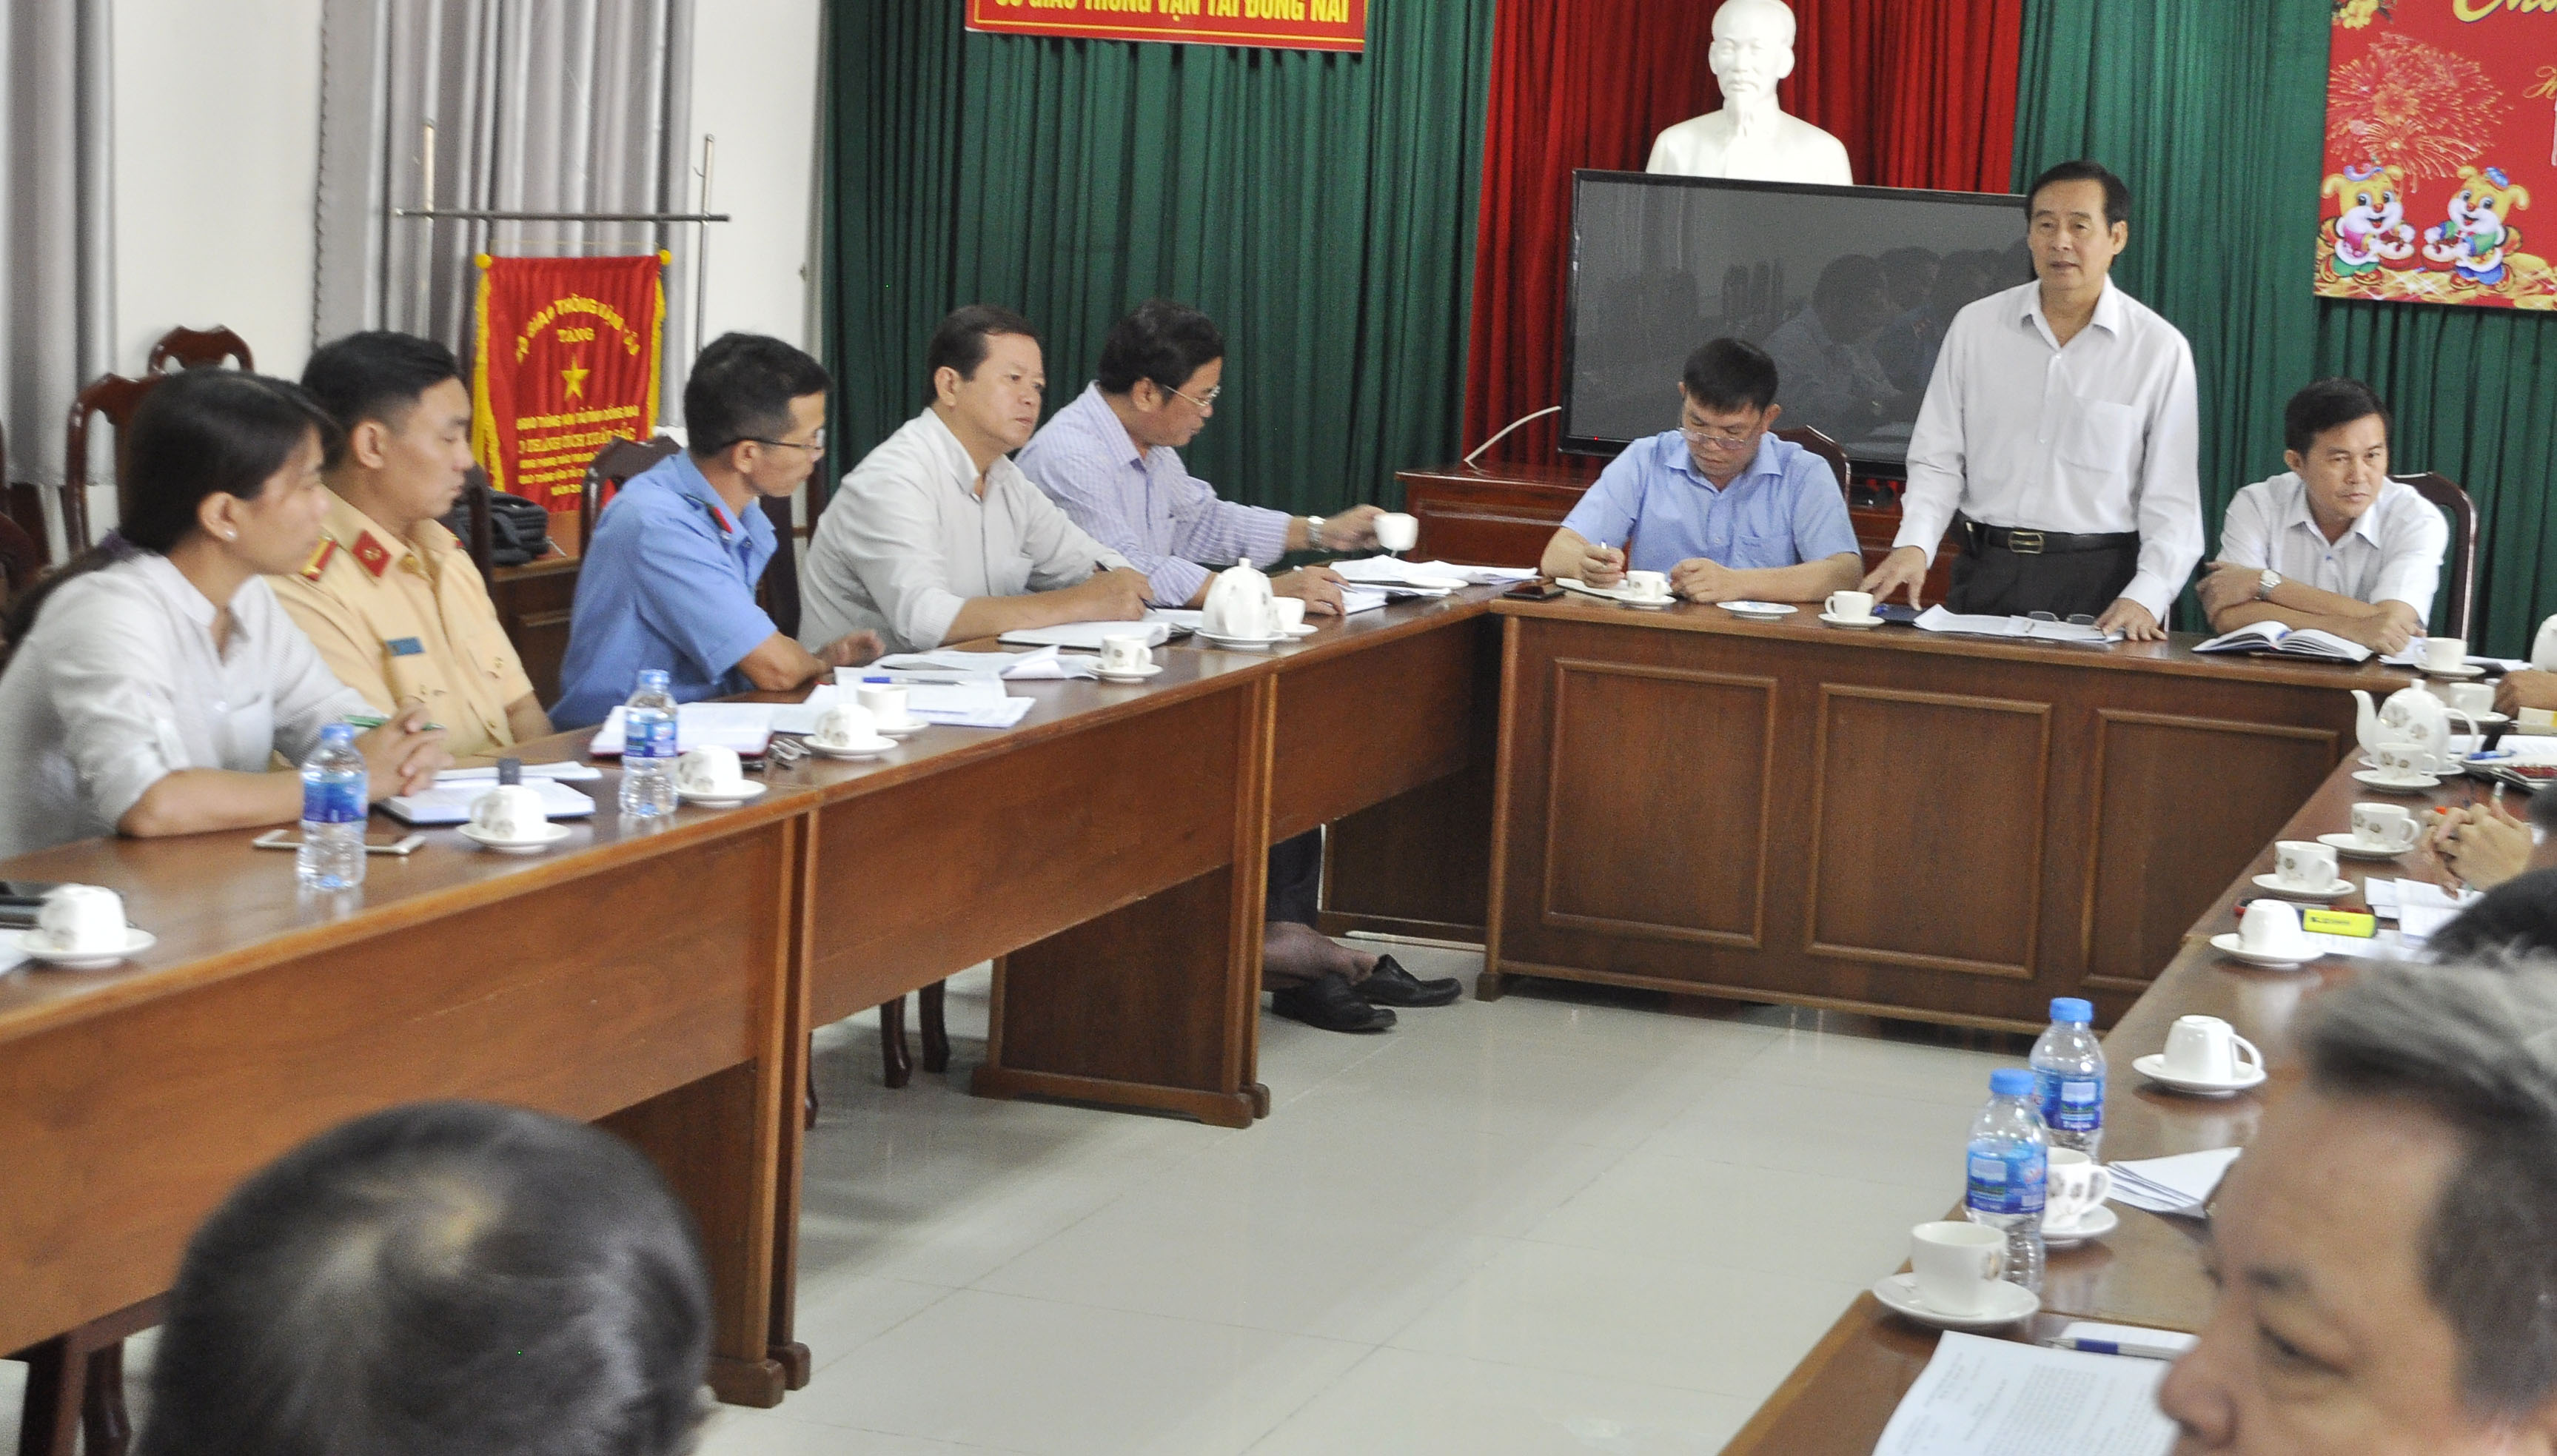 Ông Trịnh Tuấn Liêm Giám đốc Sở Giao thông - vận tải, Phó ban thường trực Ban An toàn giao thông tỉnh phát biểu tại cuộc họp.